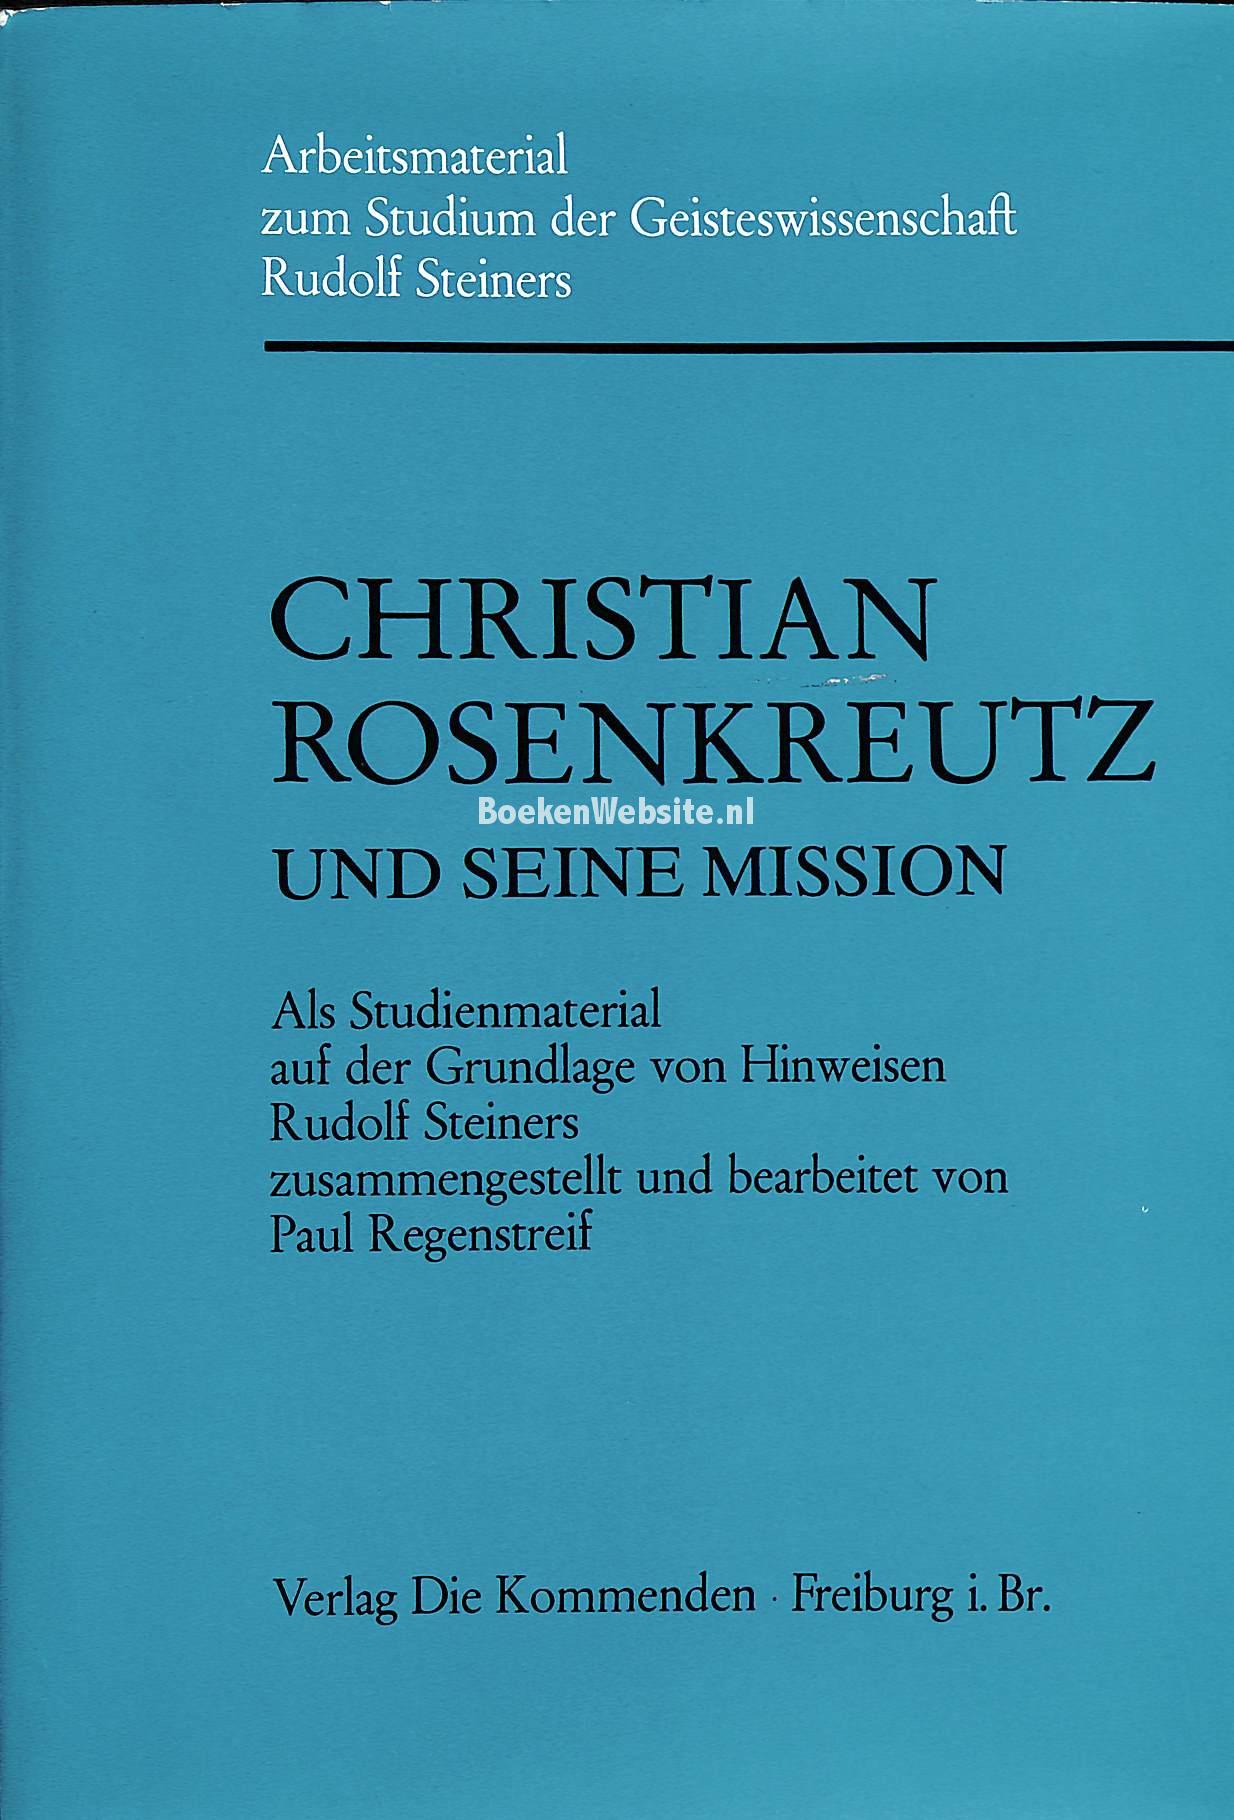 Christian Rosenkreutz und seine Mission